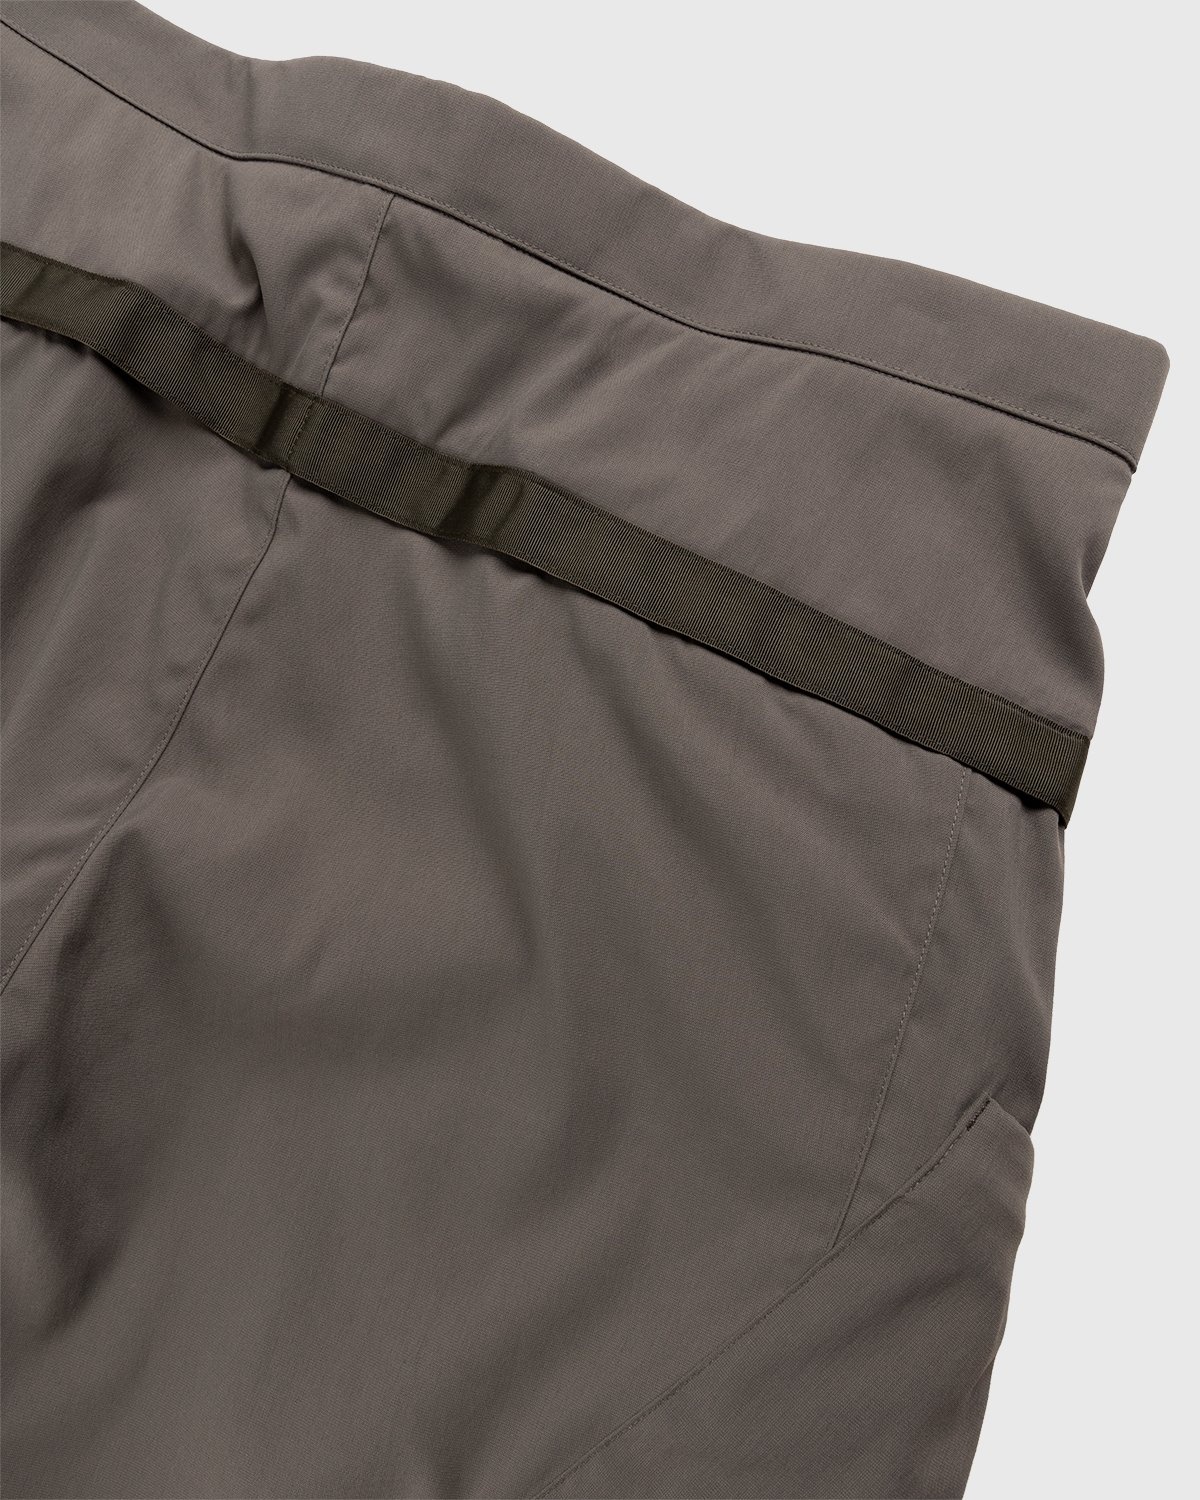 ACRONYM – SP29-M Cargo Shorts Grey - Shorts - Grey - Image 3